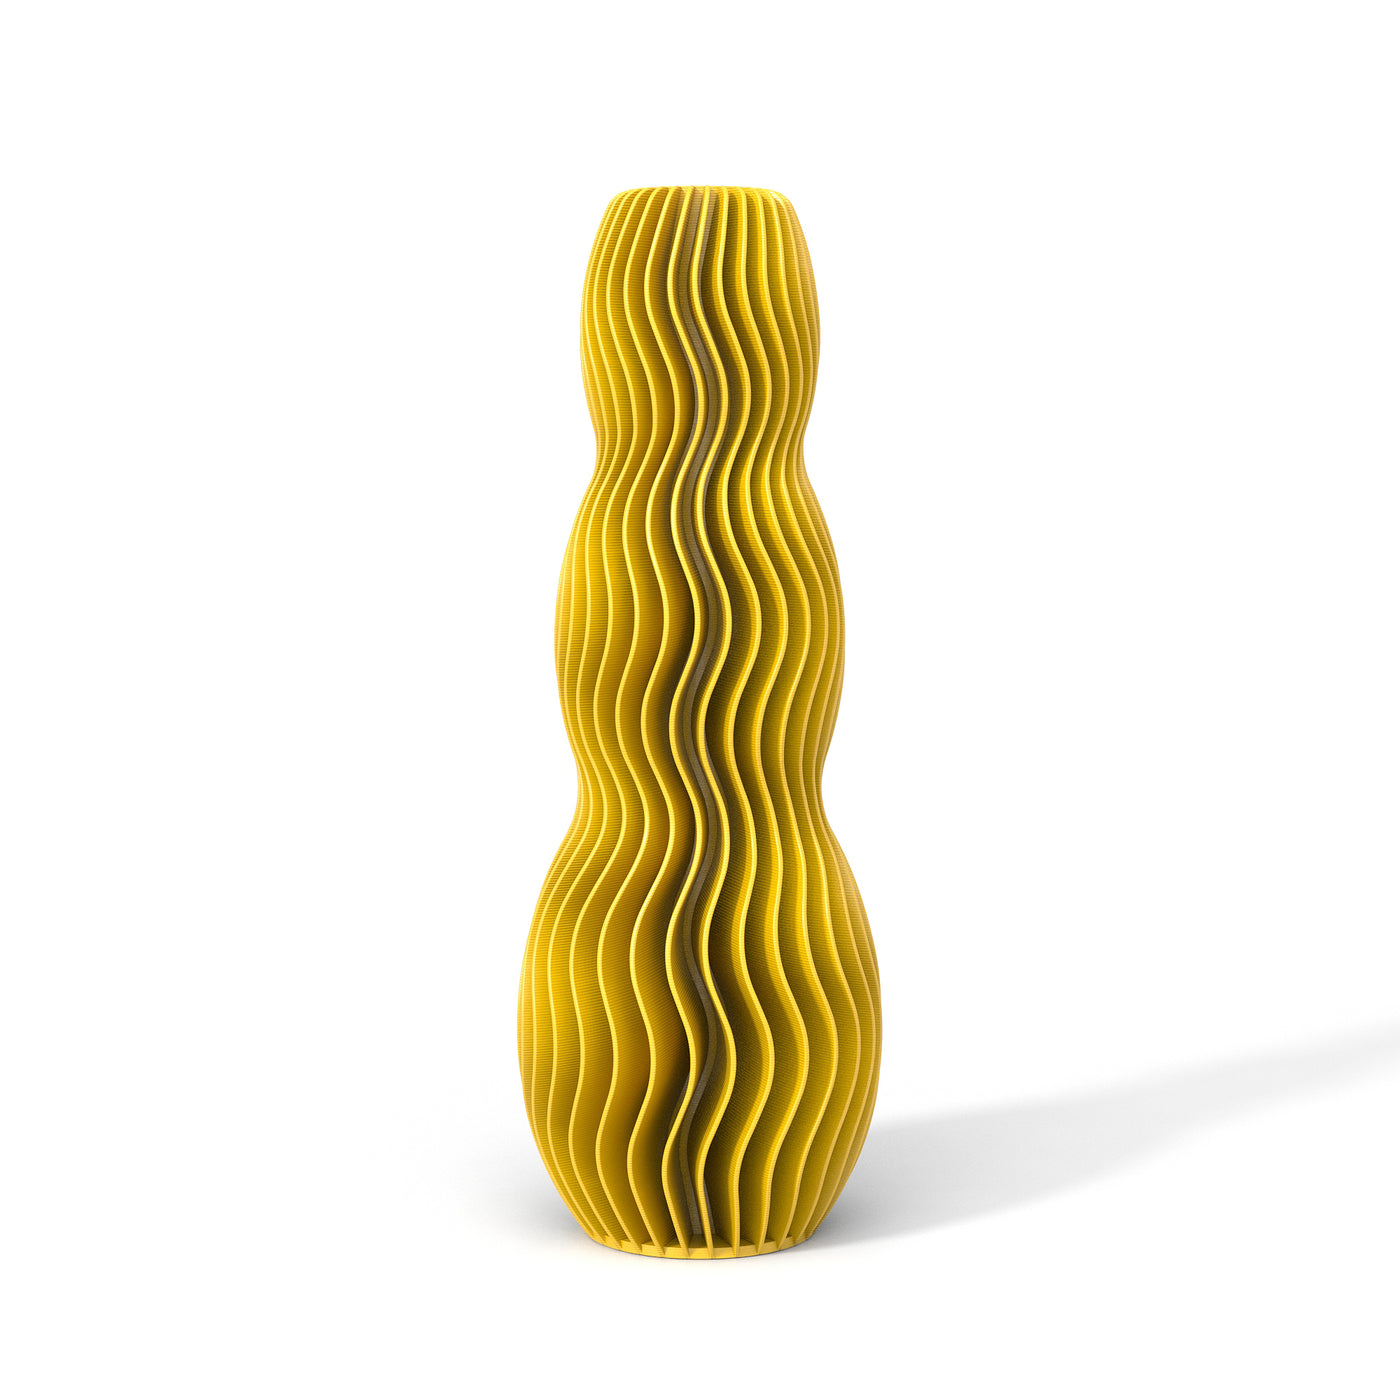 Žlutá designová váza 3D print WAVE 3 zepředu